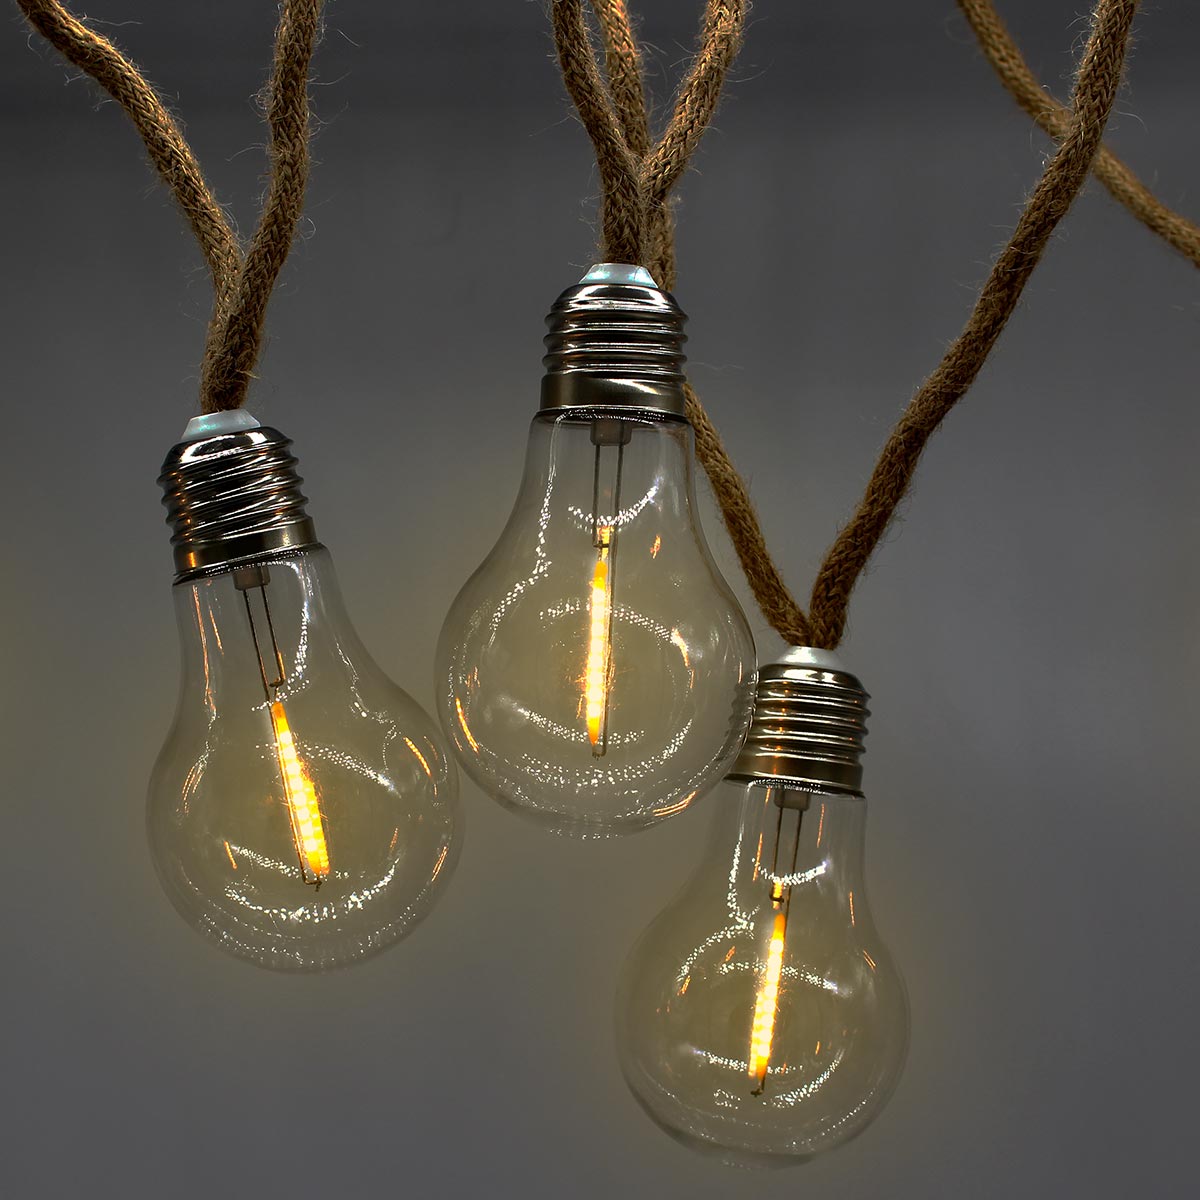 Guirlande lumineuse extérieur en corde 10 ampoules filament transparentes LED blanc chaud FANTASY CORD 7.70m - REDDECO.com